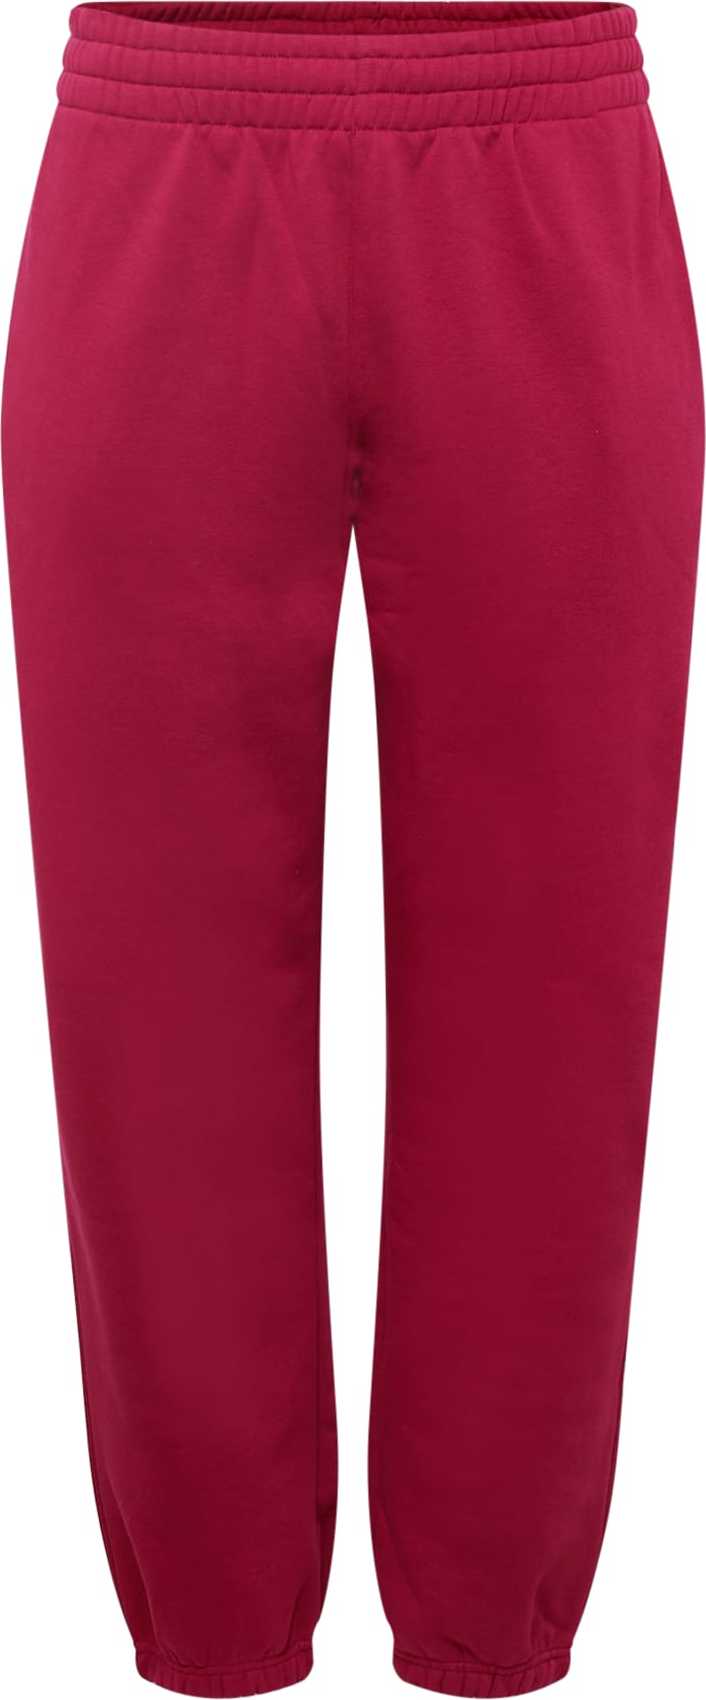 ADIDAS ORIGINALS Kalhoty karmínově červené